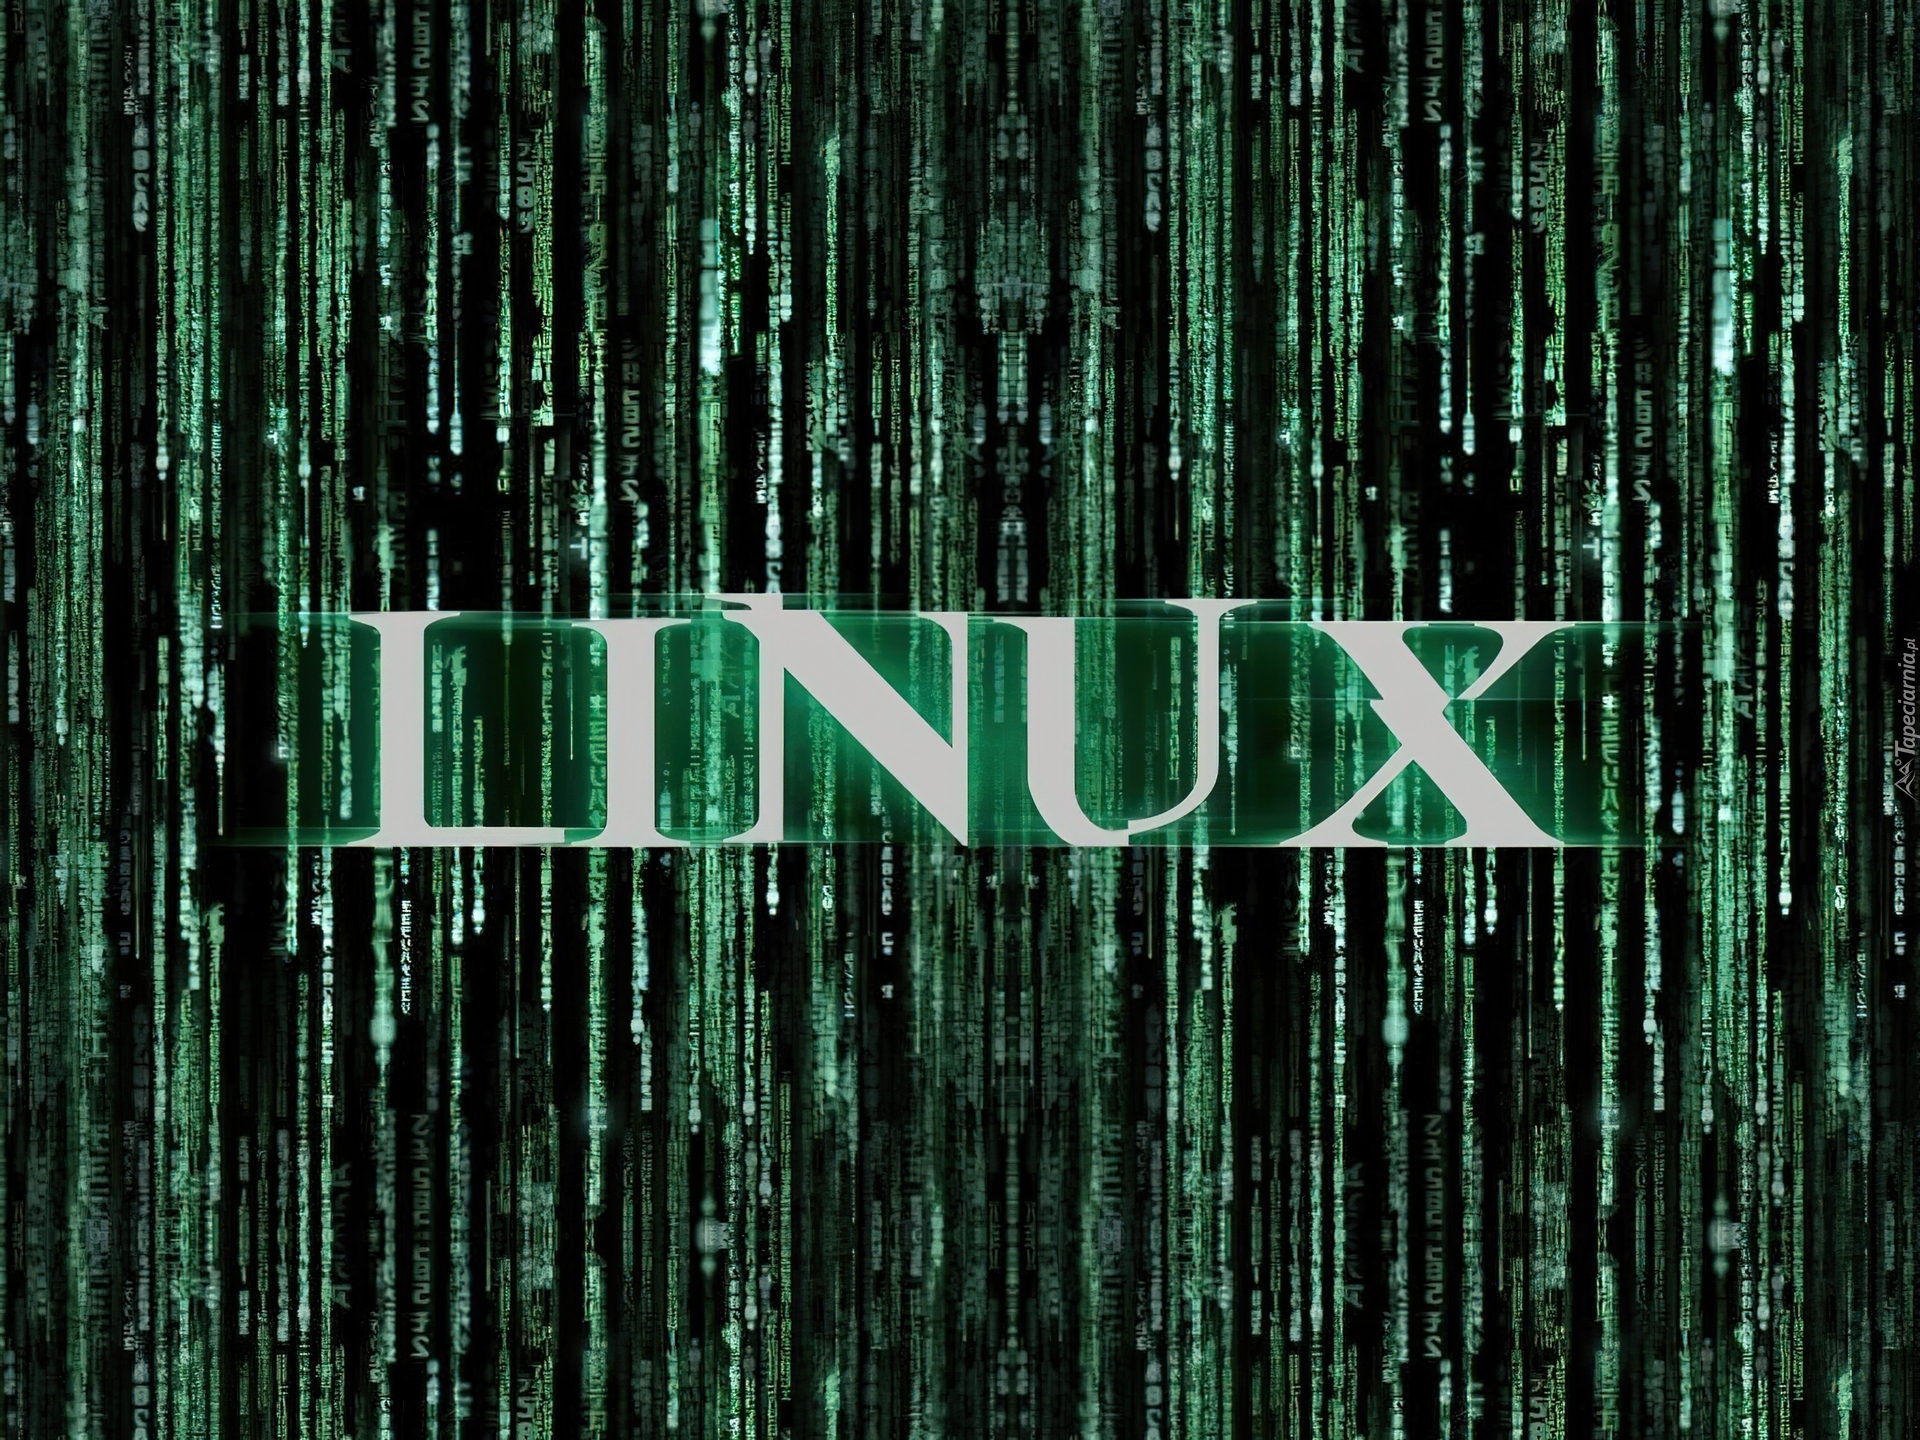 Linux, Napis, Zieleń